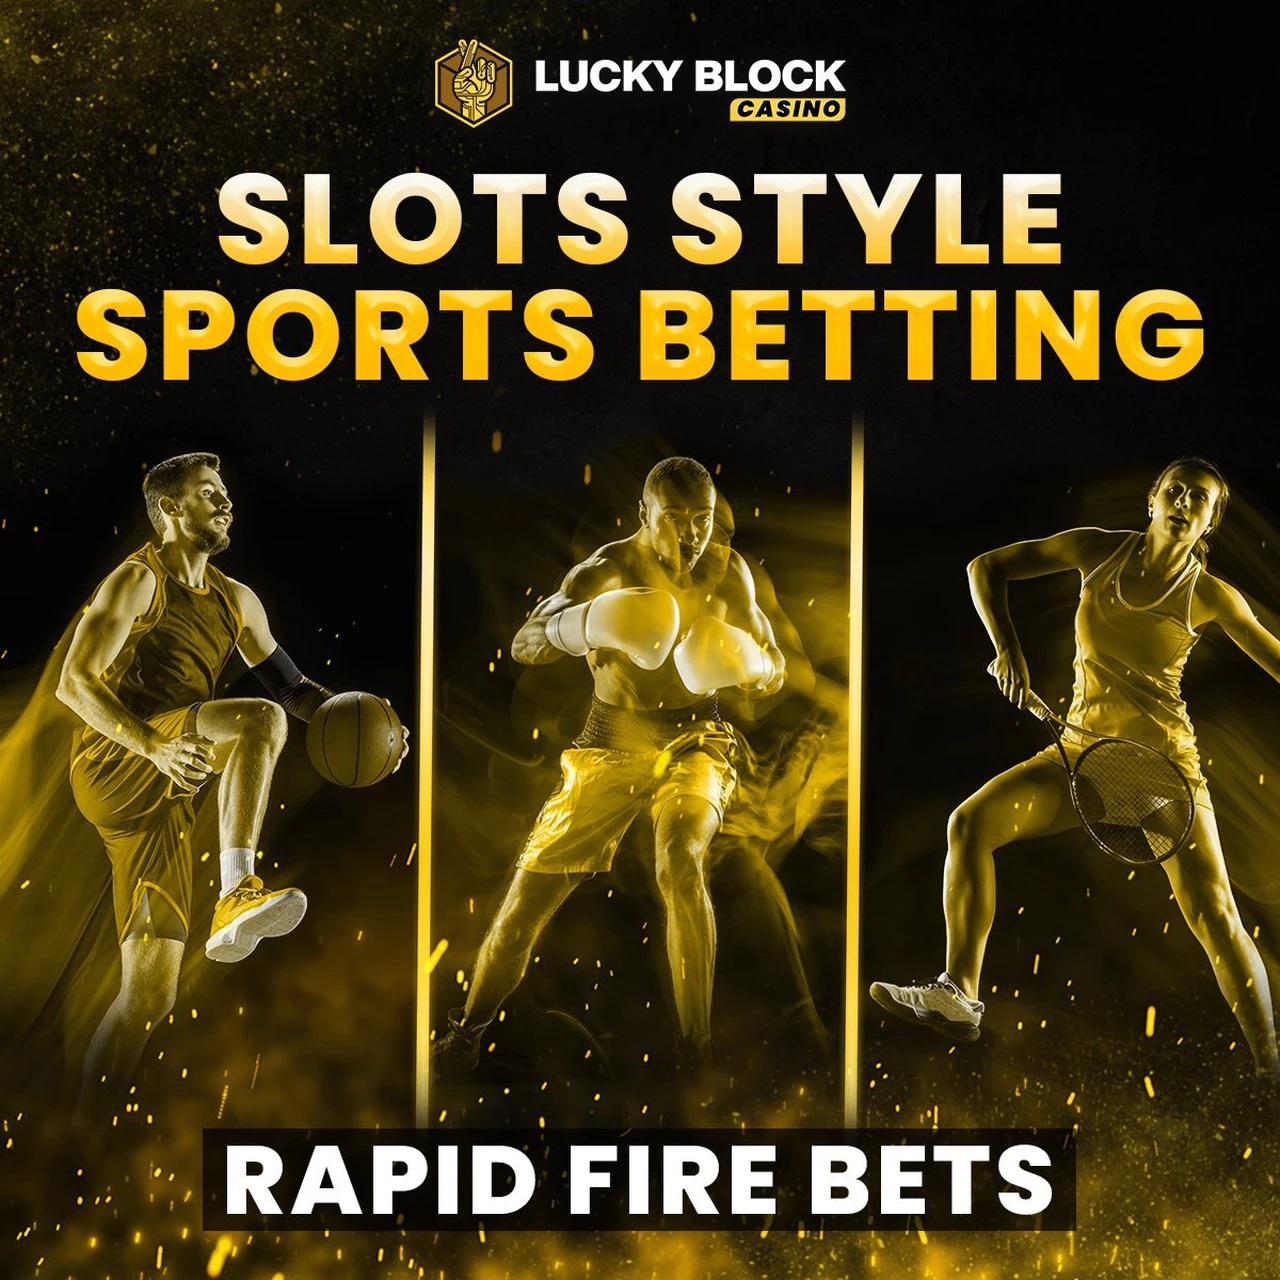 Lucky Block casino y su sistema de apuestas rápidas ha llegado para cambiar las reglas de juego